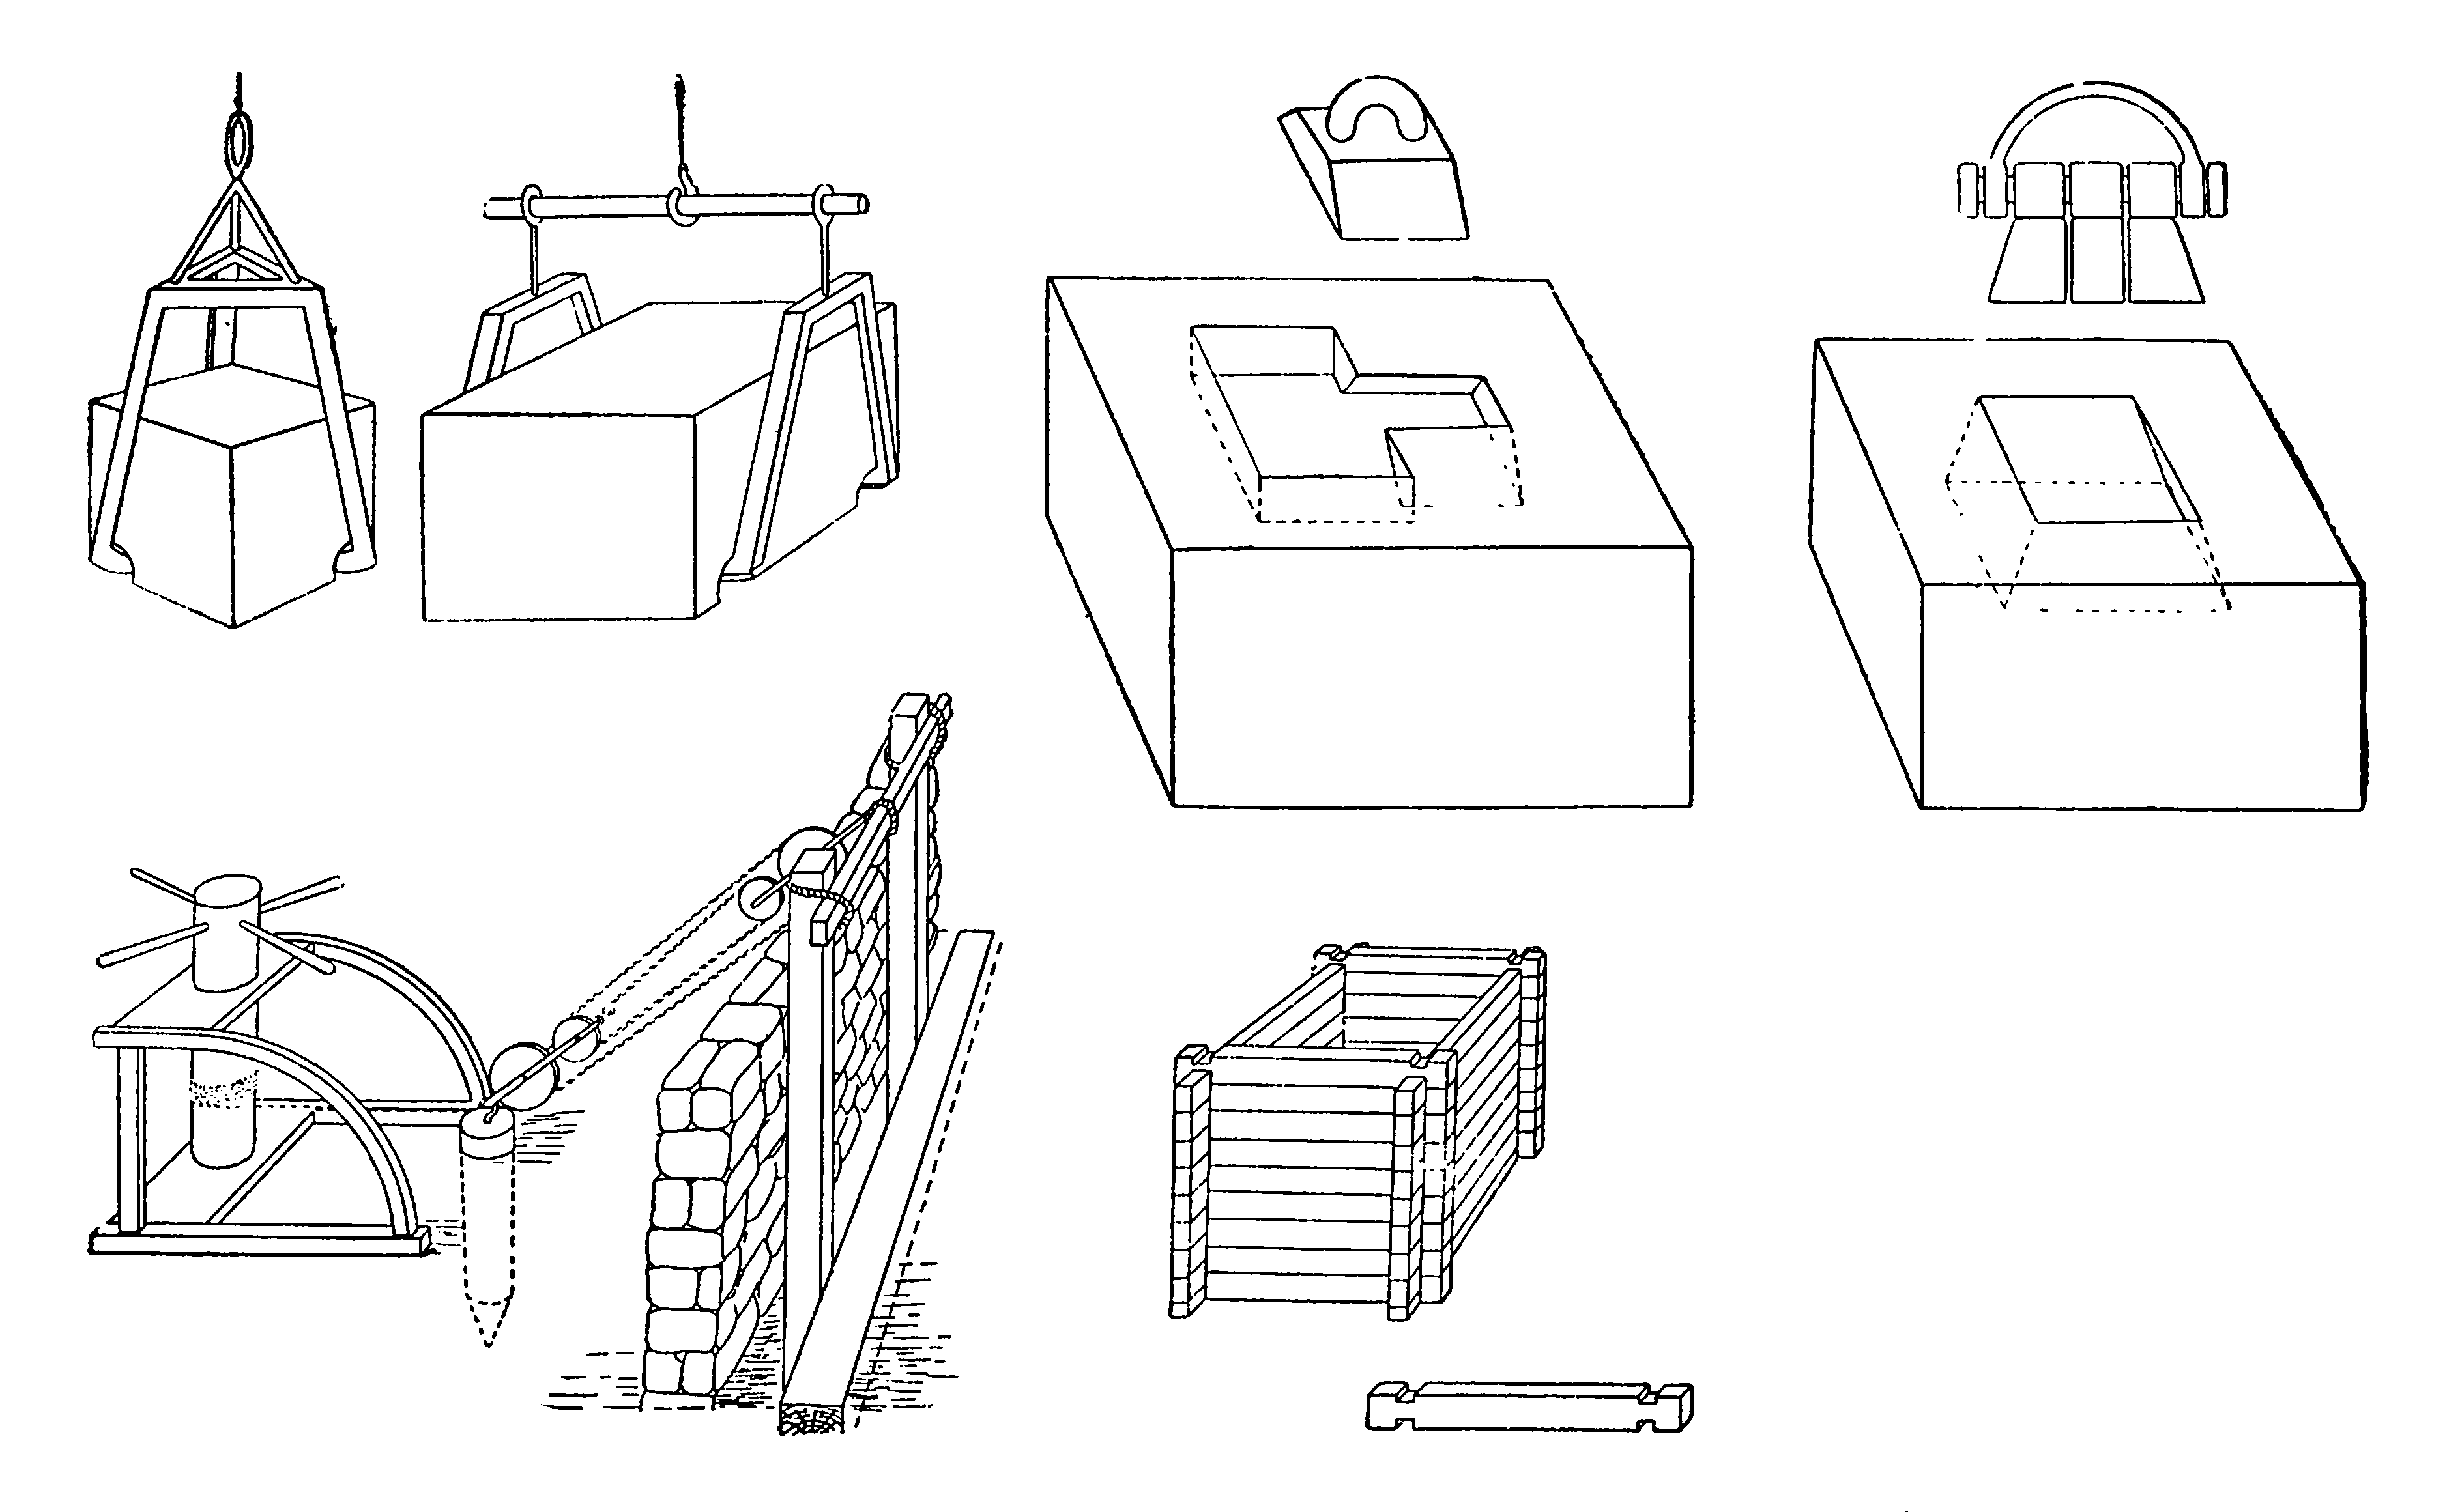 32. Изображения строительных машин и приспособлений, описанных Героном Александрийским в его «Механике»